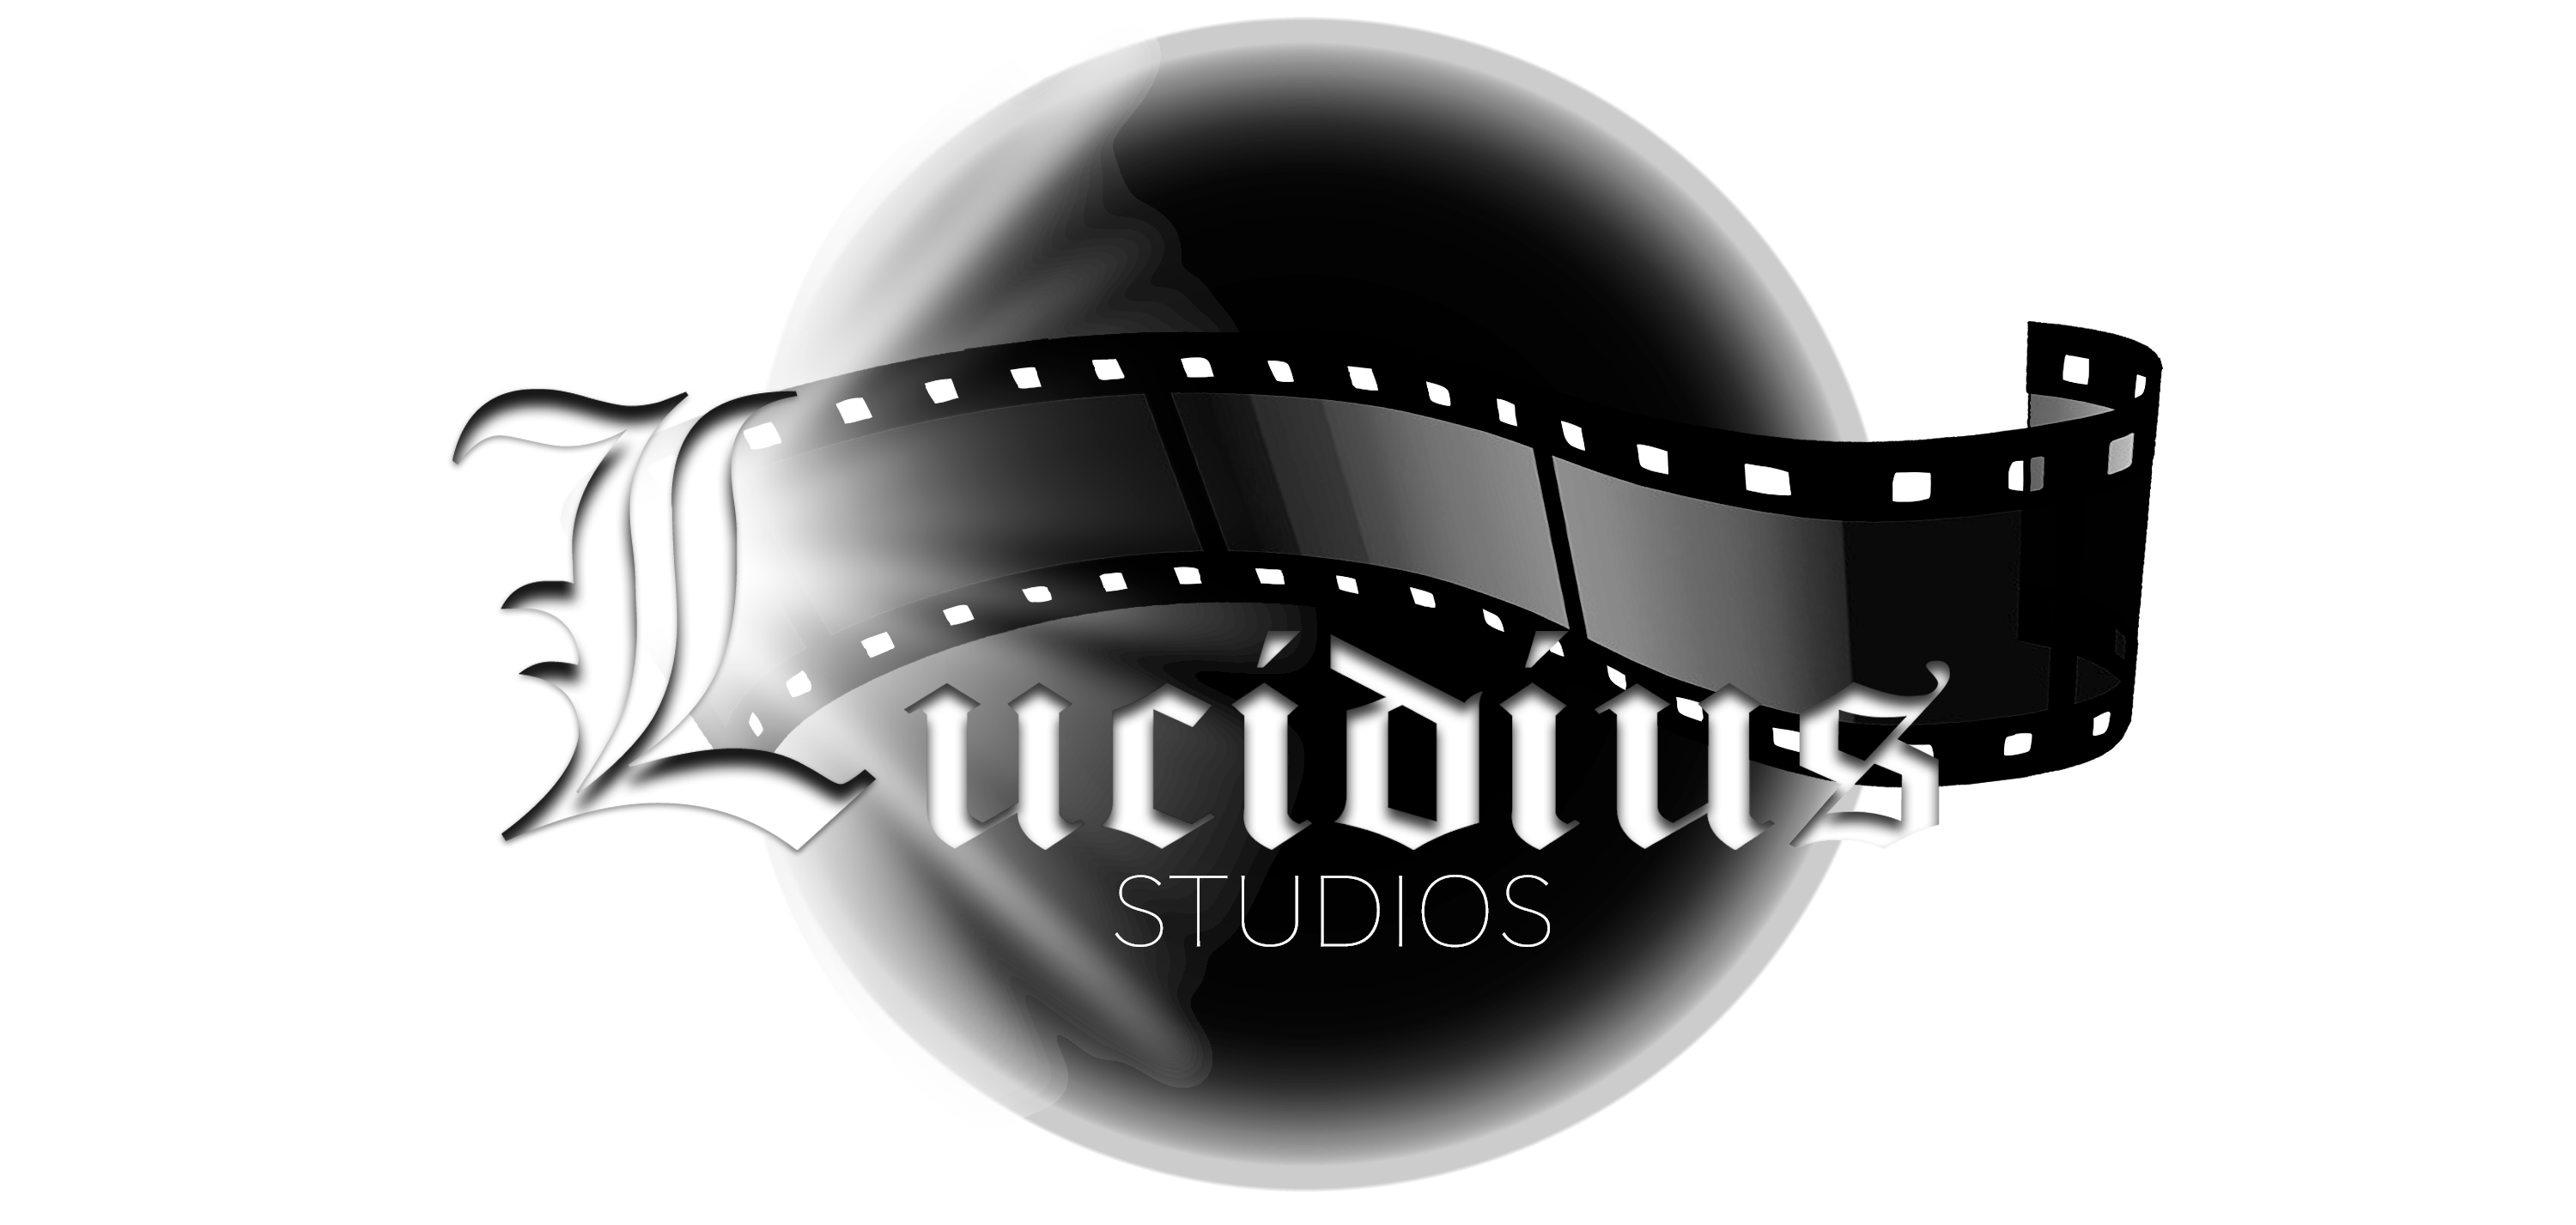 Studios Lucidius Vidéo Corporative à Longueuil offrant des services et/ou produit tel que Pour les entreprises, Musique / Multimédias fait partie du répertoire de PME d'ICI un répertoire que propulse gratuitement les entreprises Québécois.